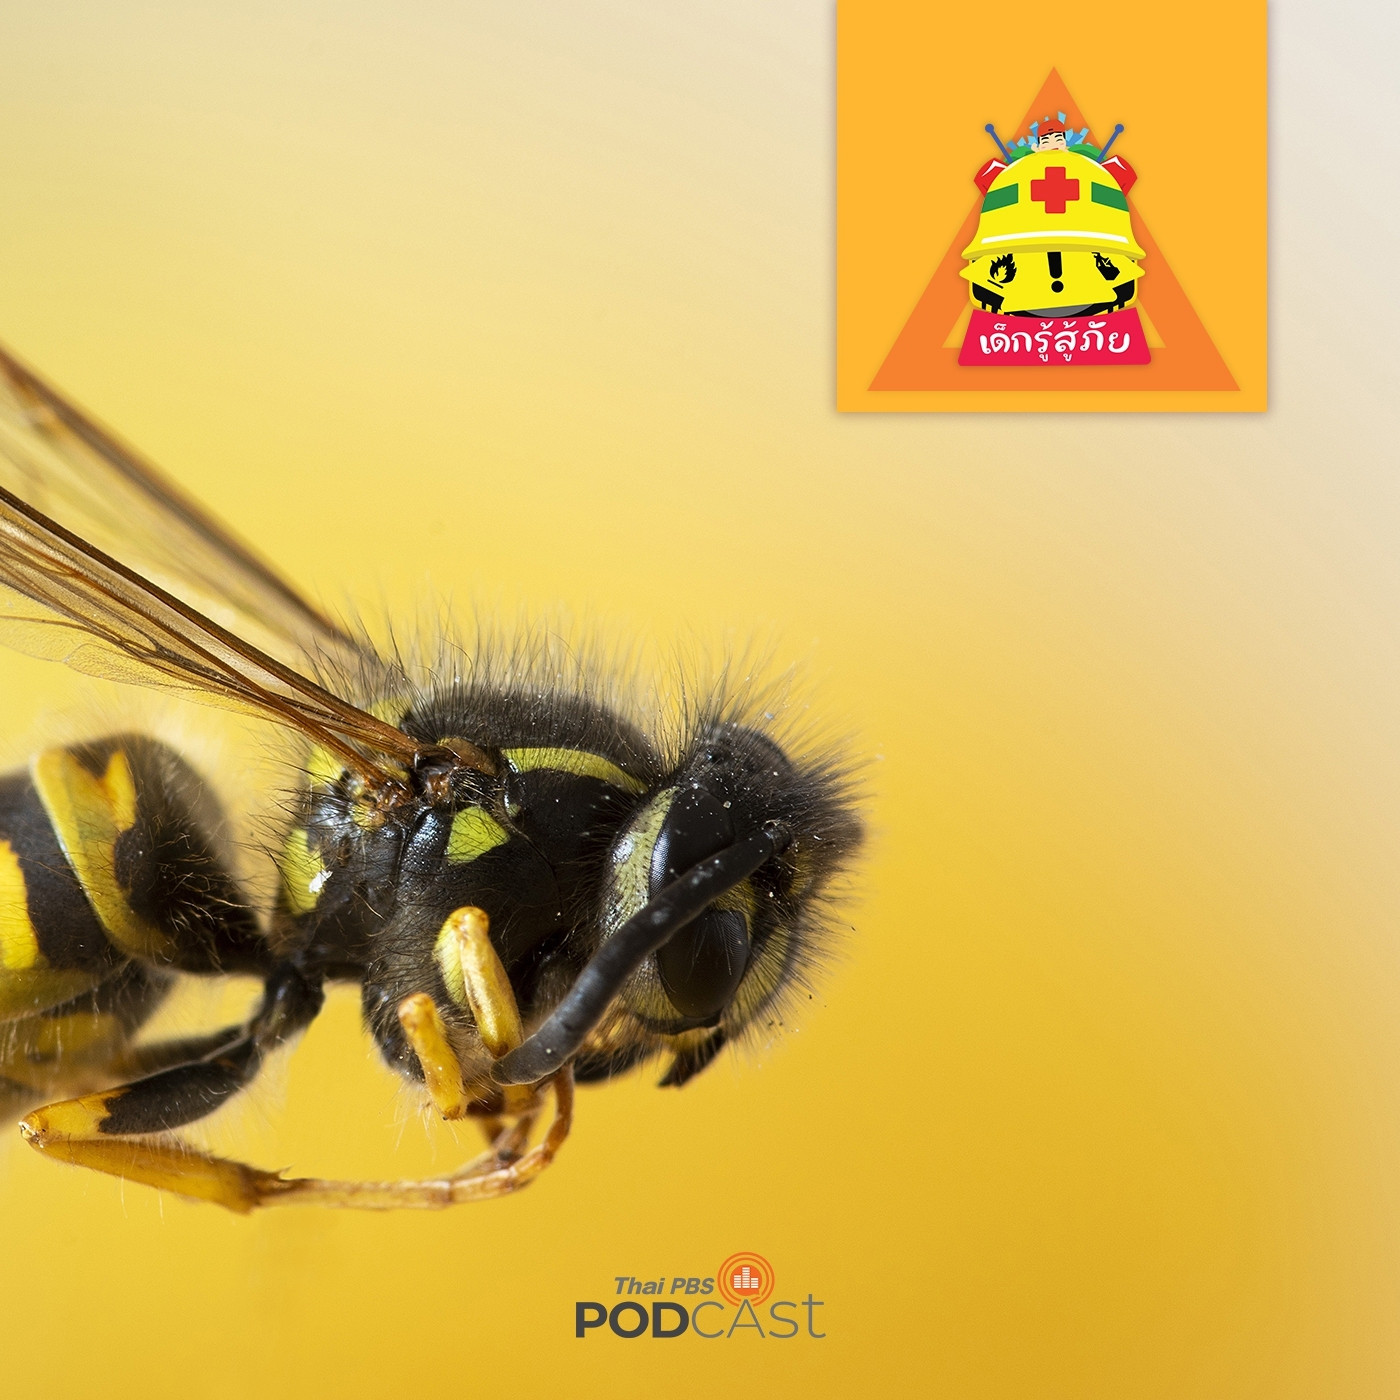 เด็กรู้สู้ภัย EP. 29: อันตรายจากการโดนผึ้งต่อย เด็กควรระวัง!